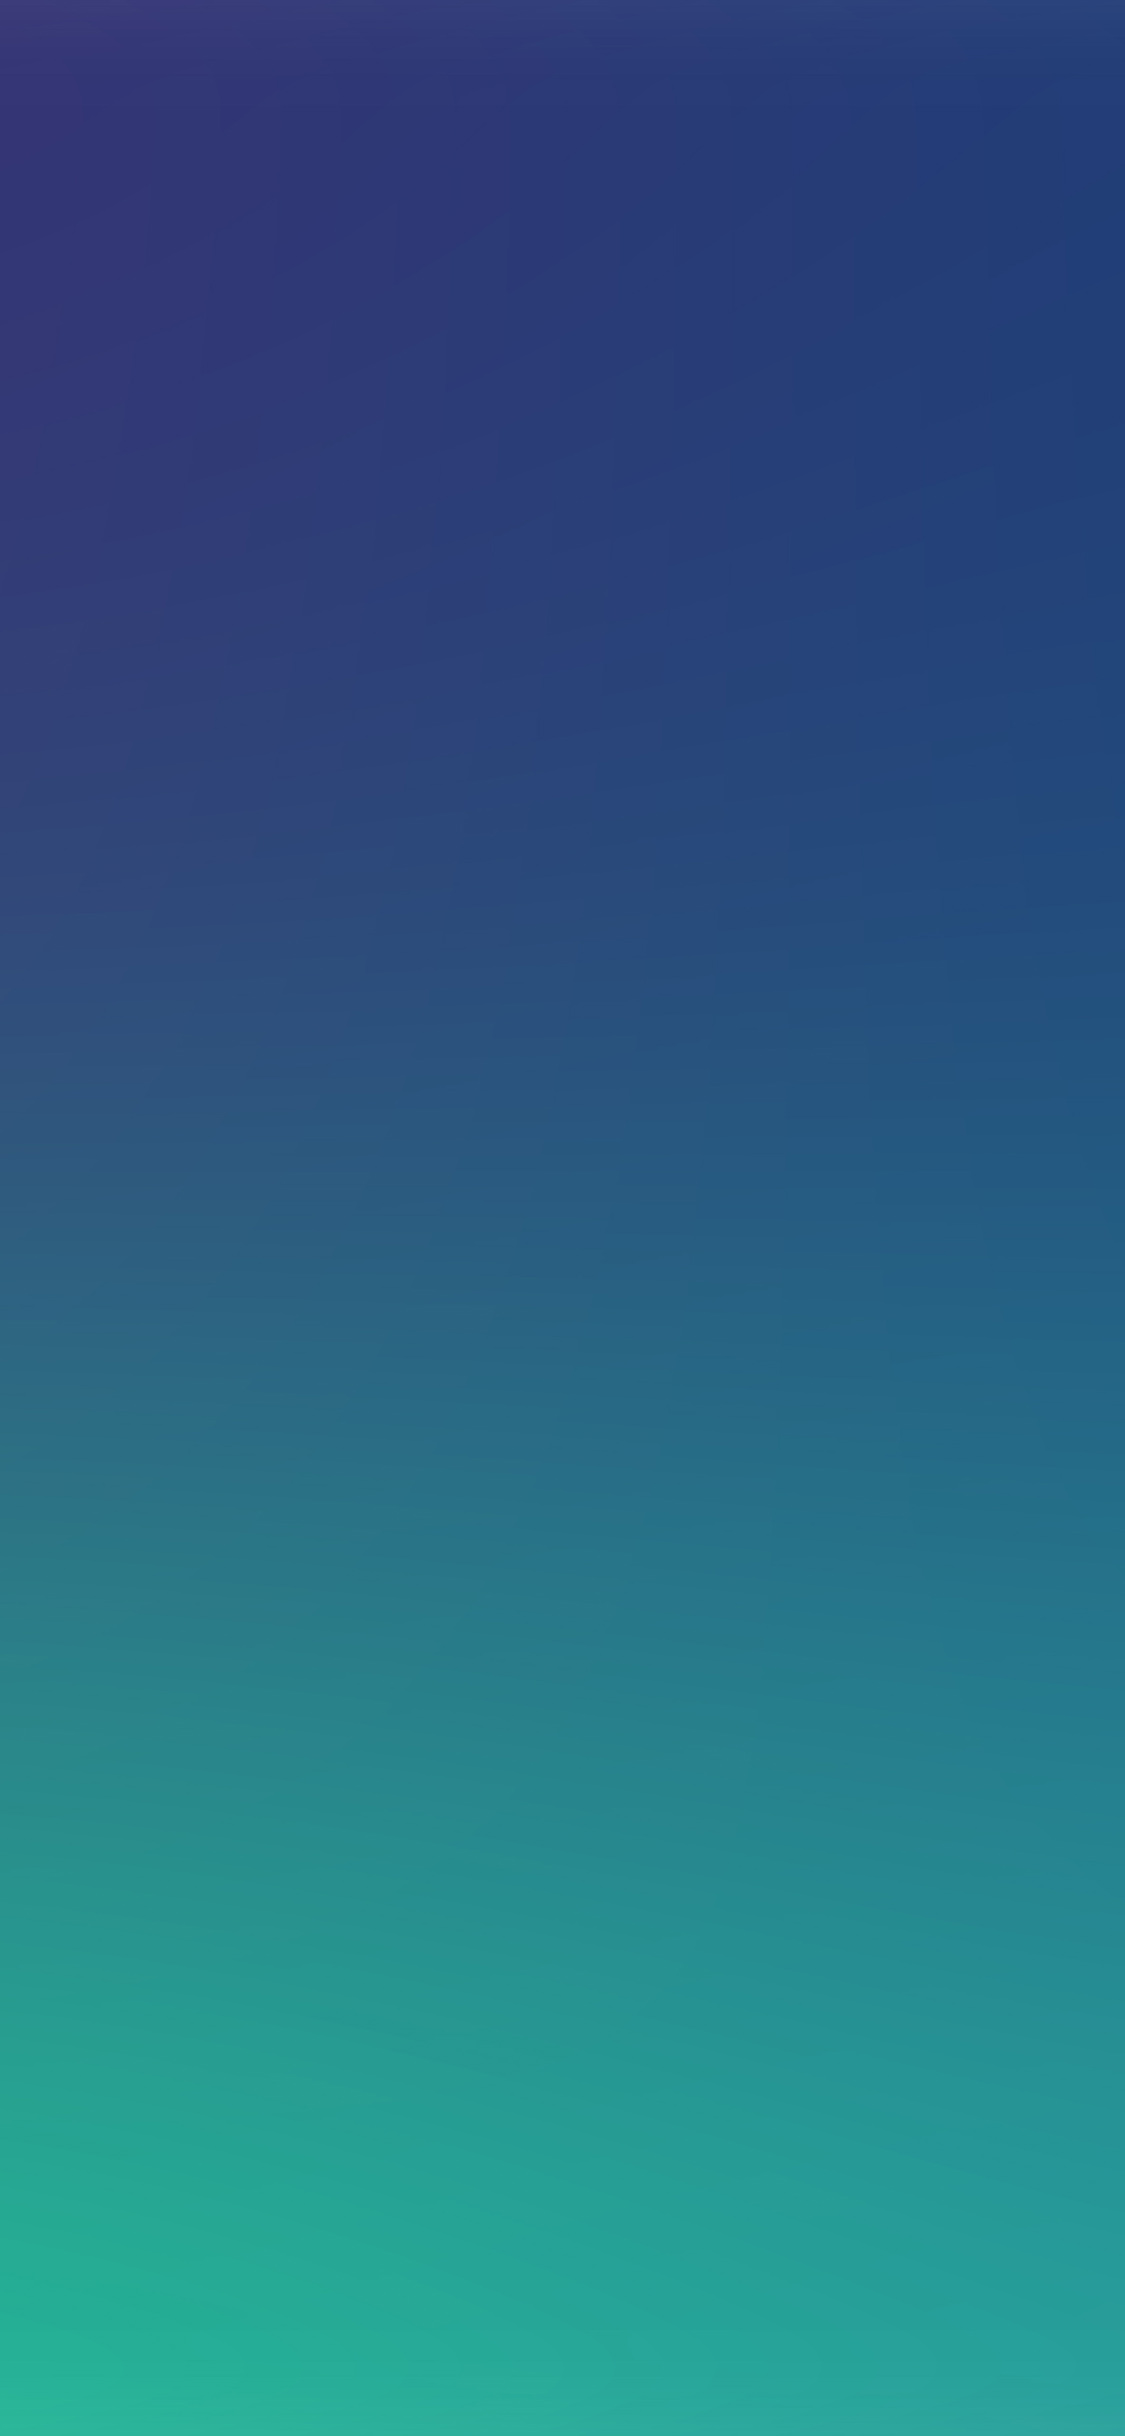 iPhone X wallpaper. blue green gradation blur